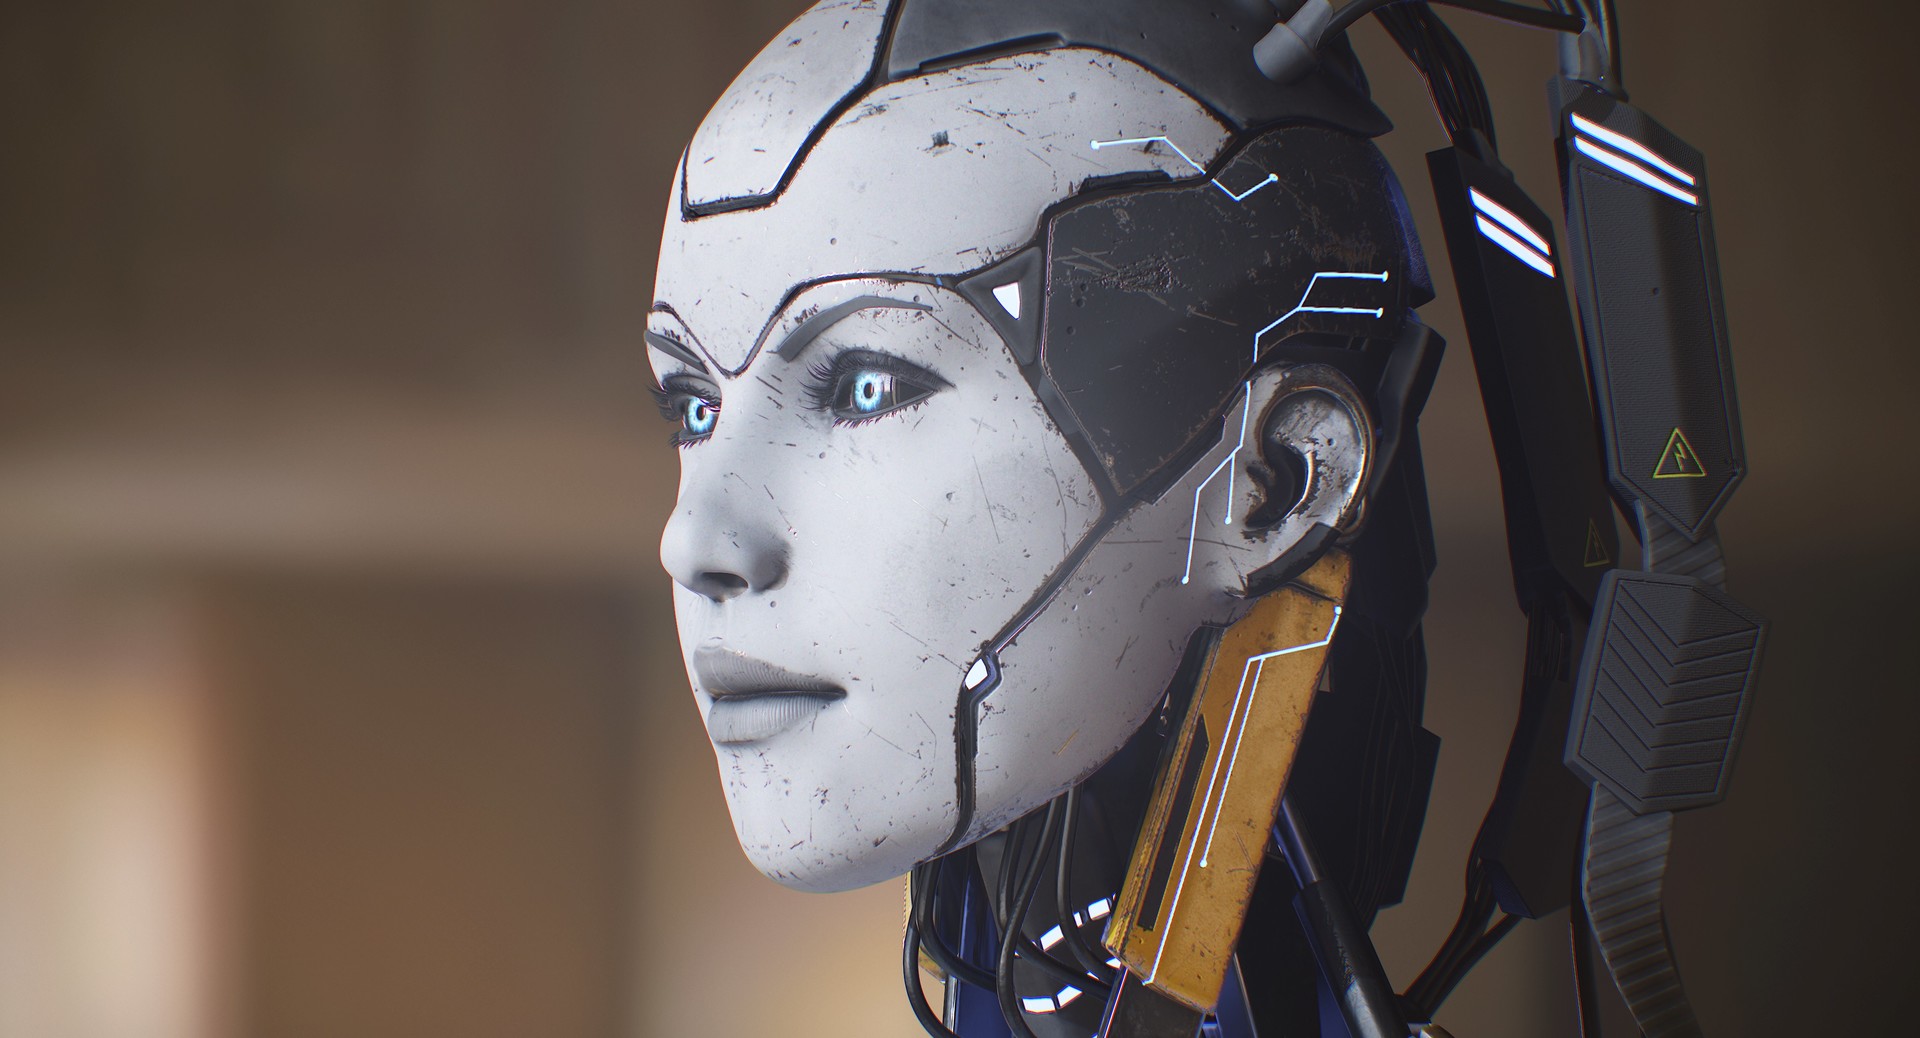 Голая девушка робот удивляет нестандартной красотой 